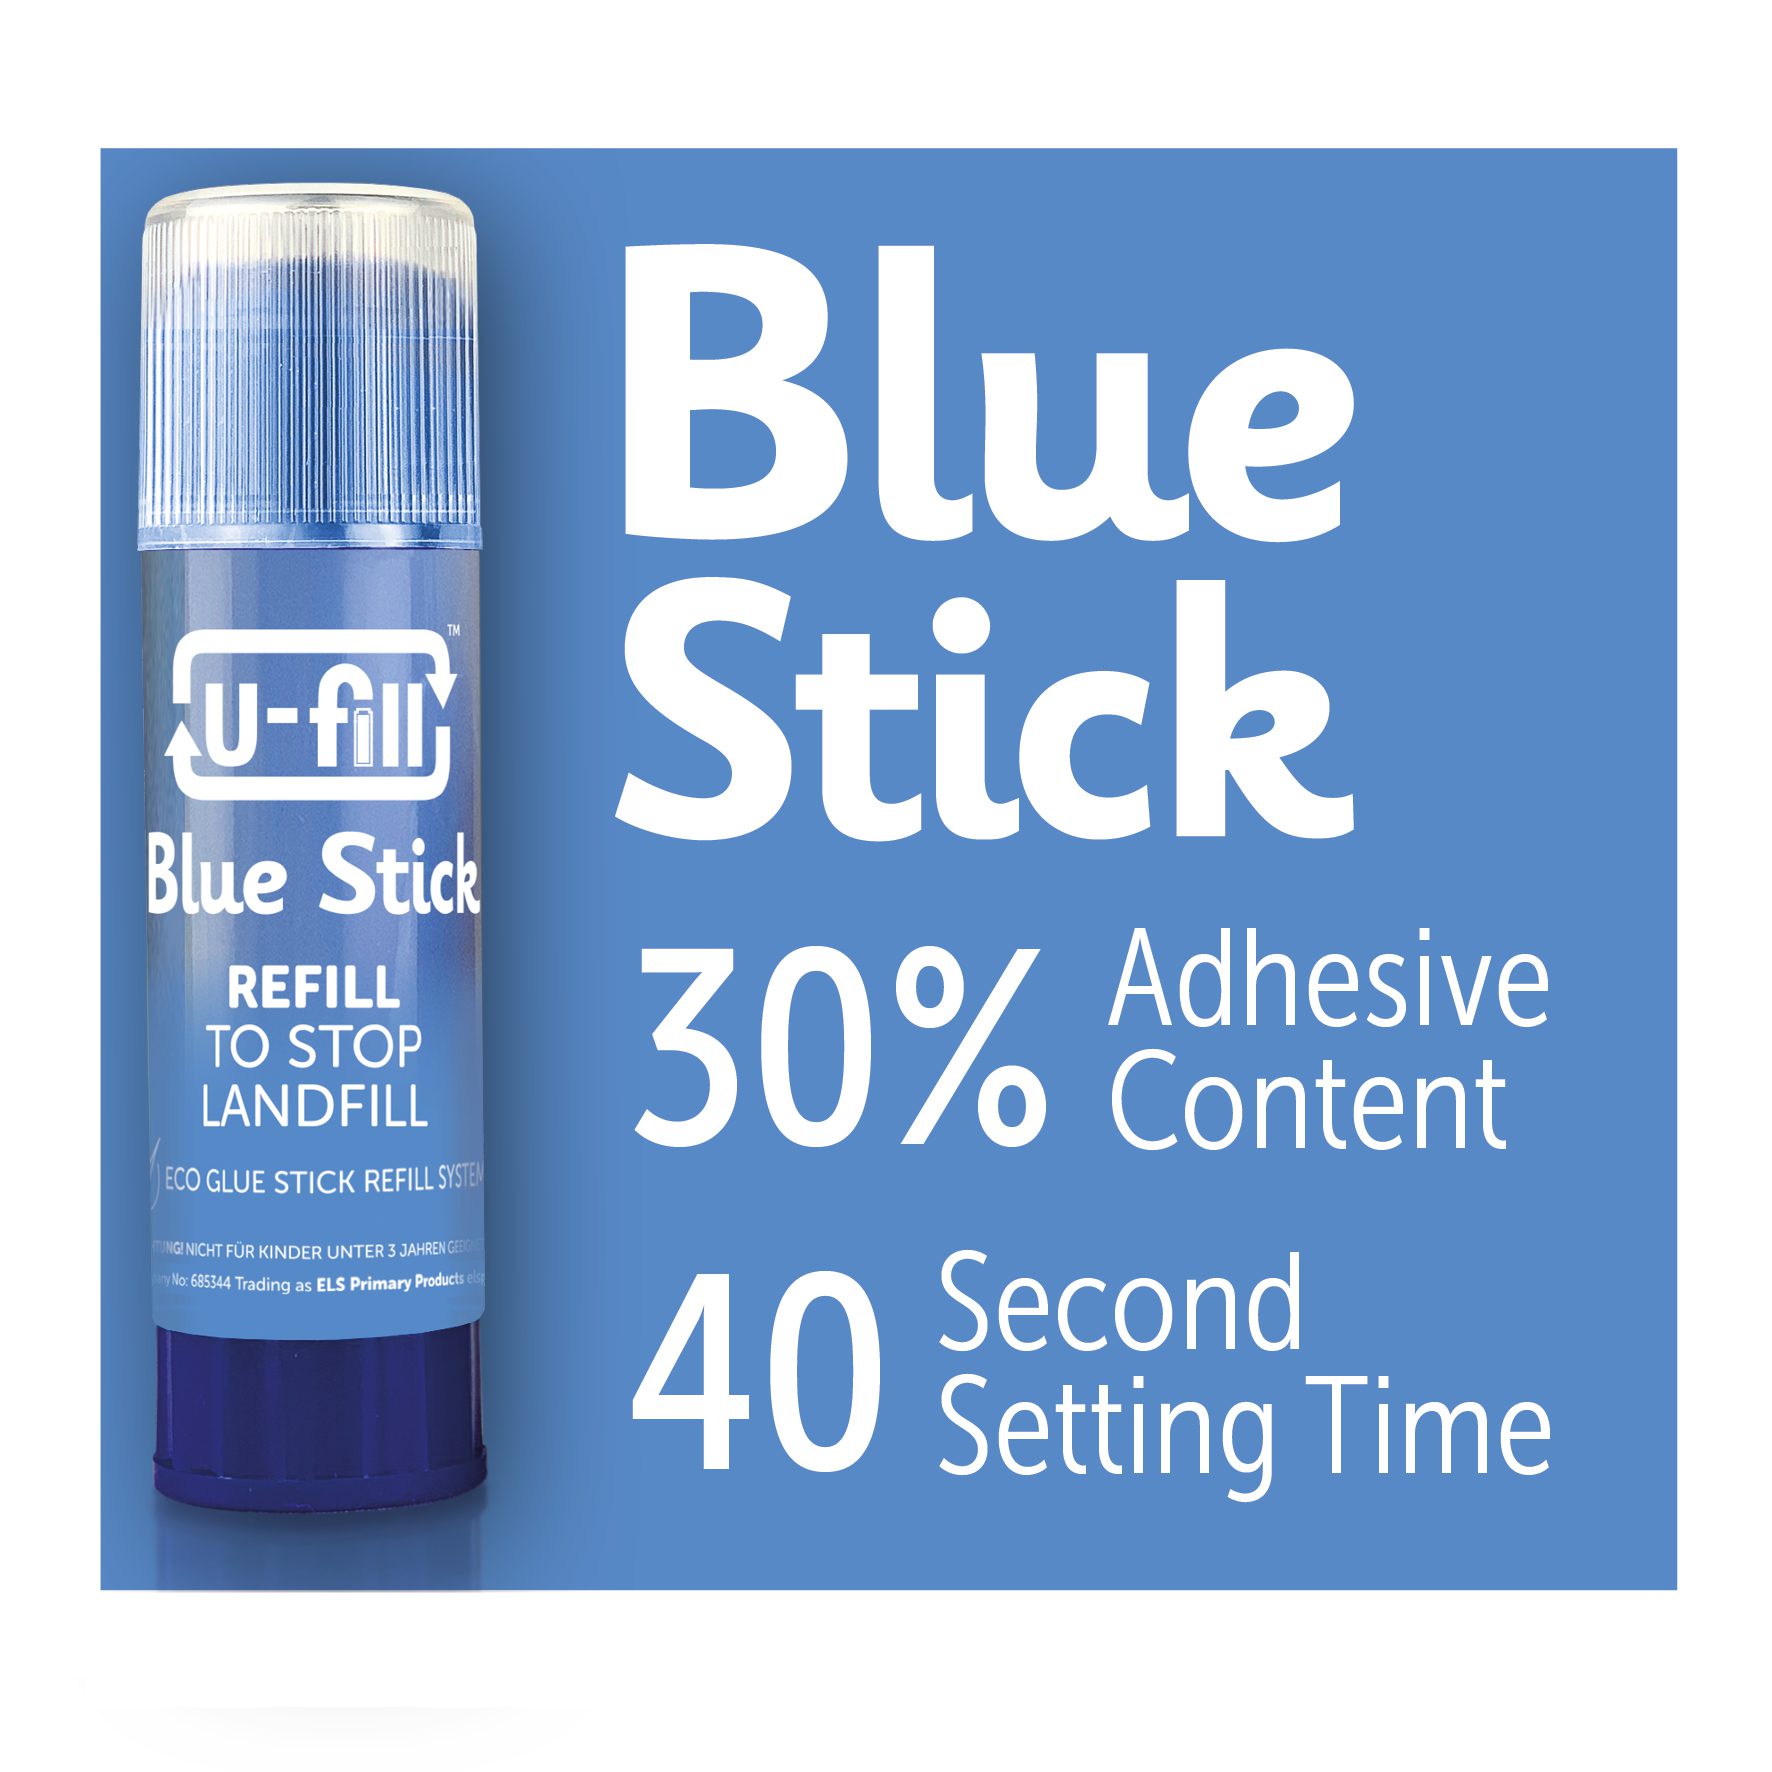 Eco Friendly Glue Sticks - U-fill Blue Glue Sticks